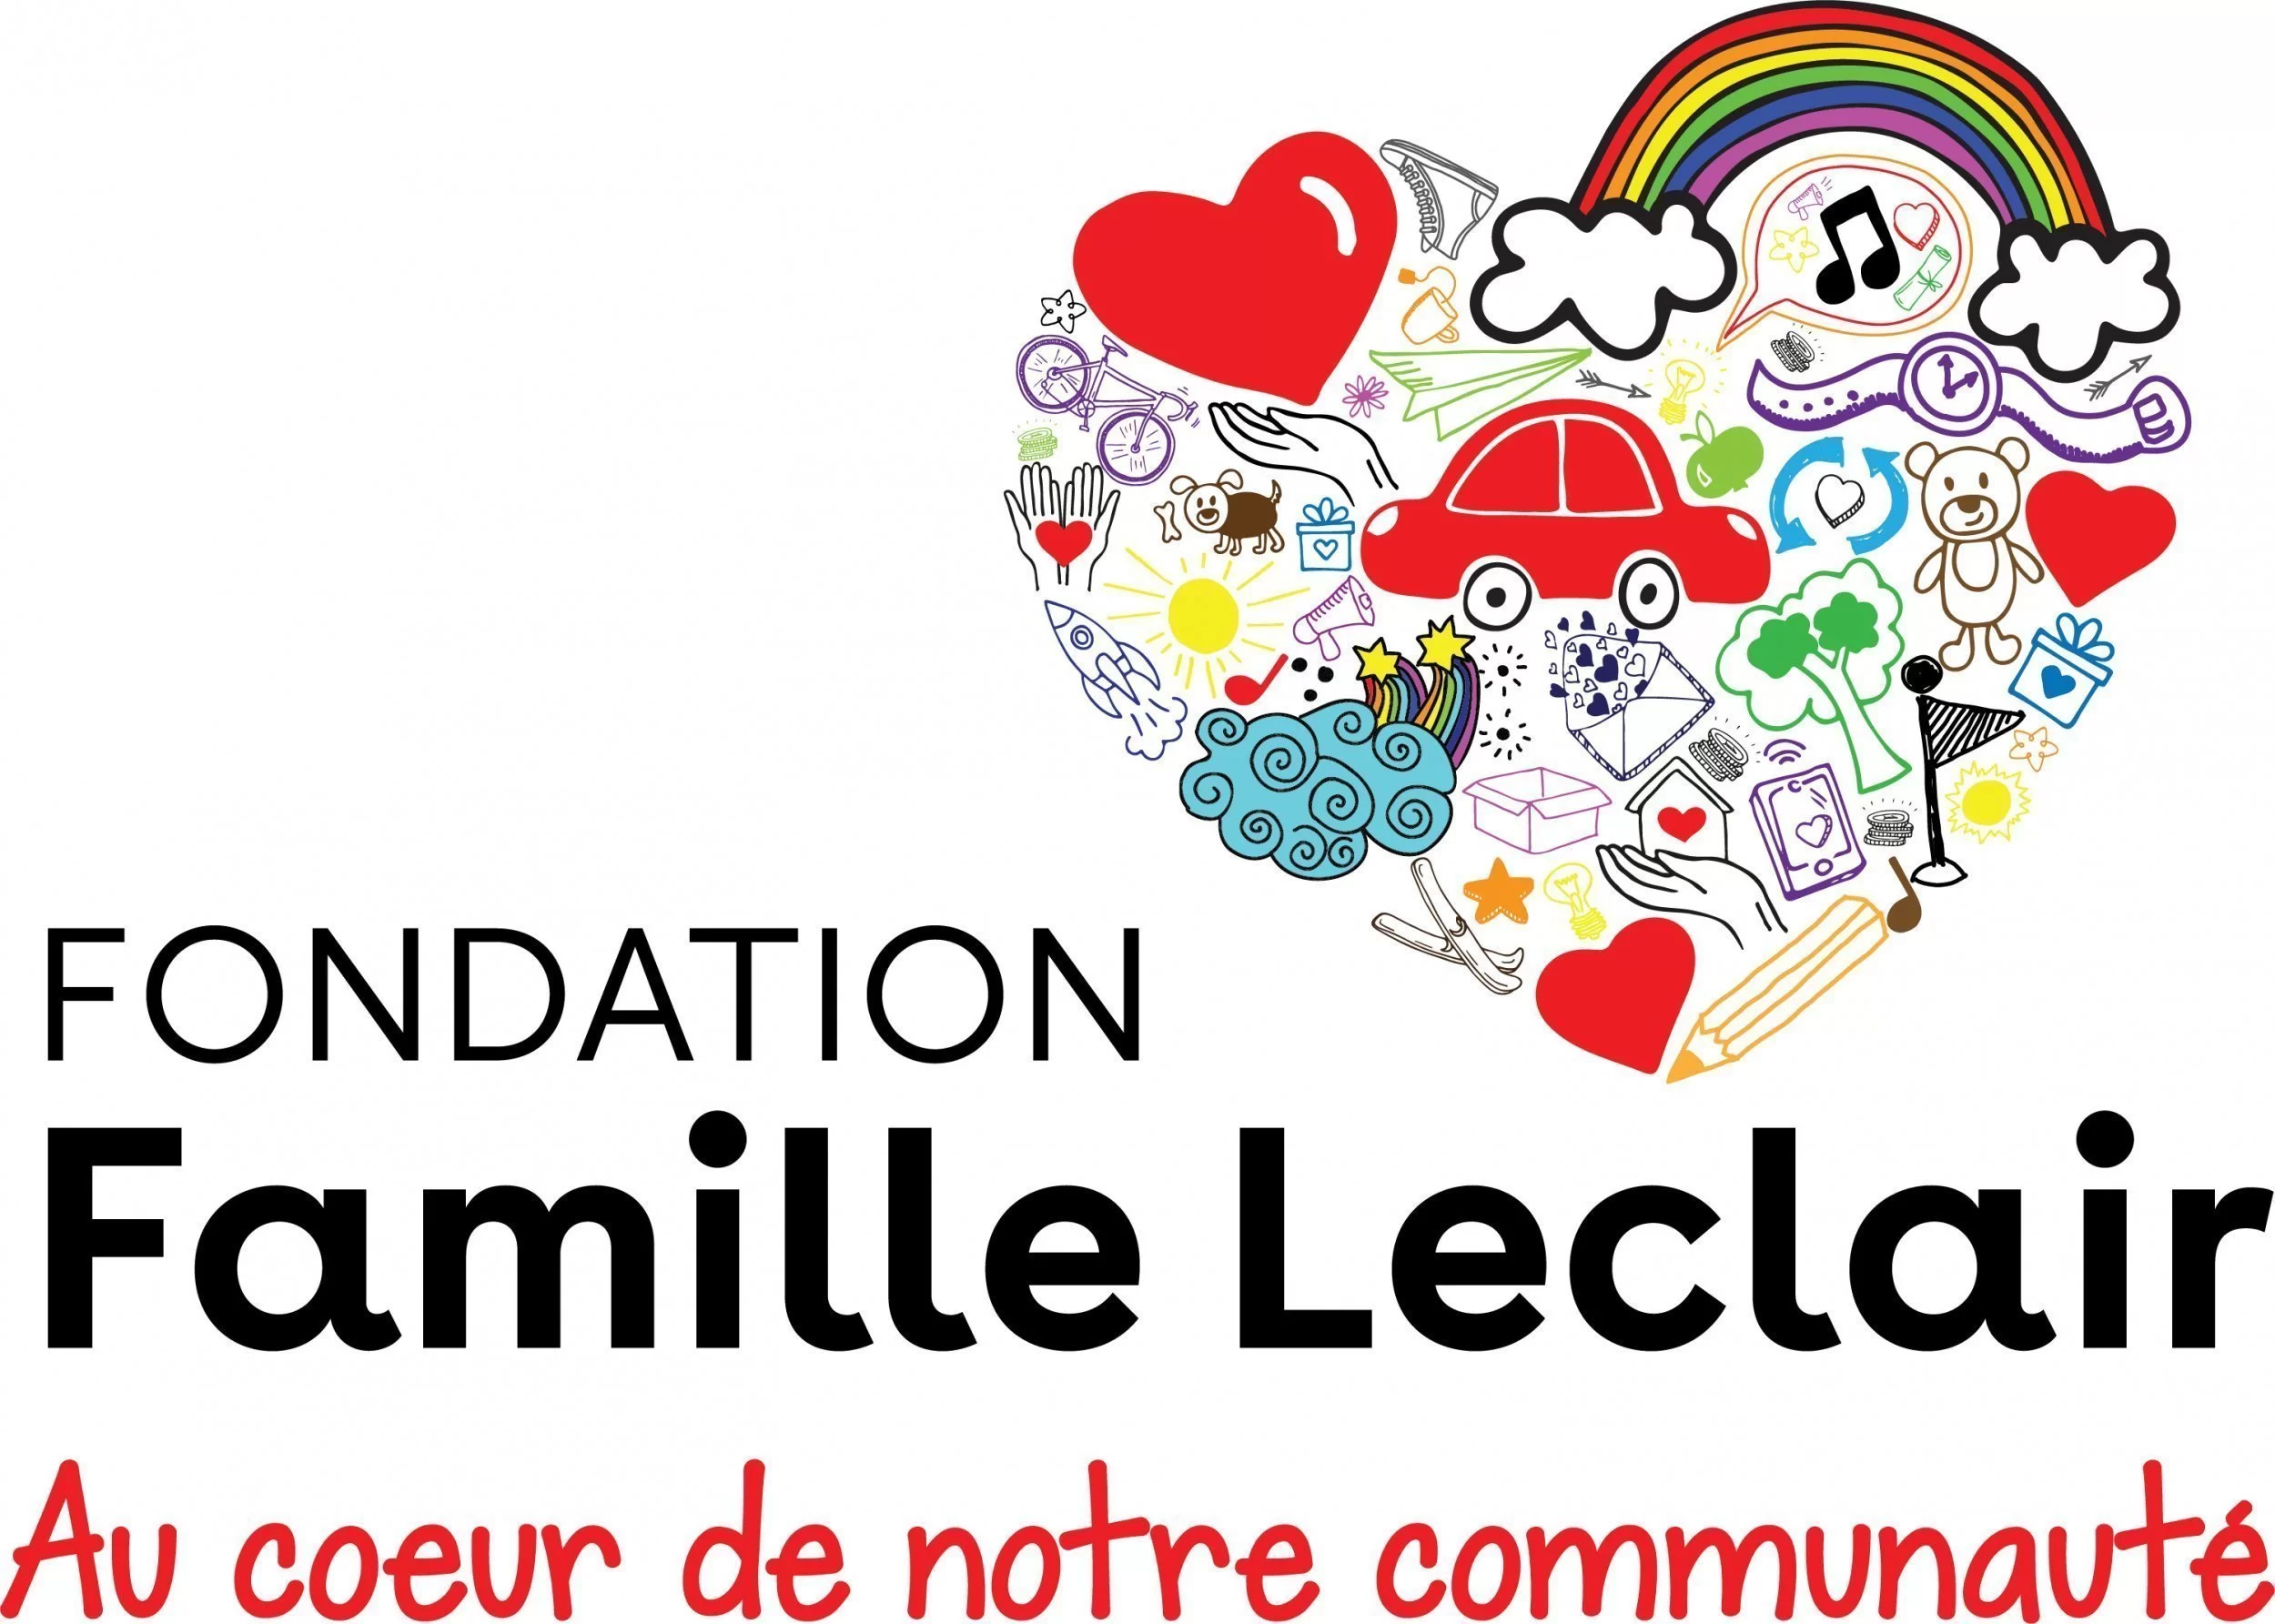 Fondation Famille Leclair